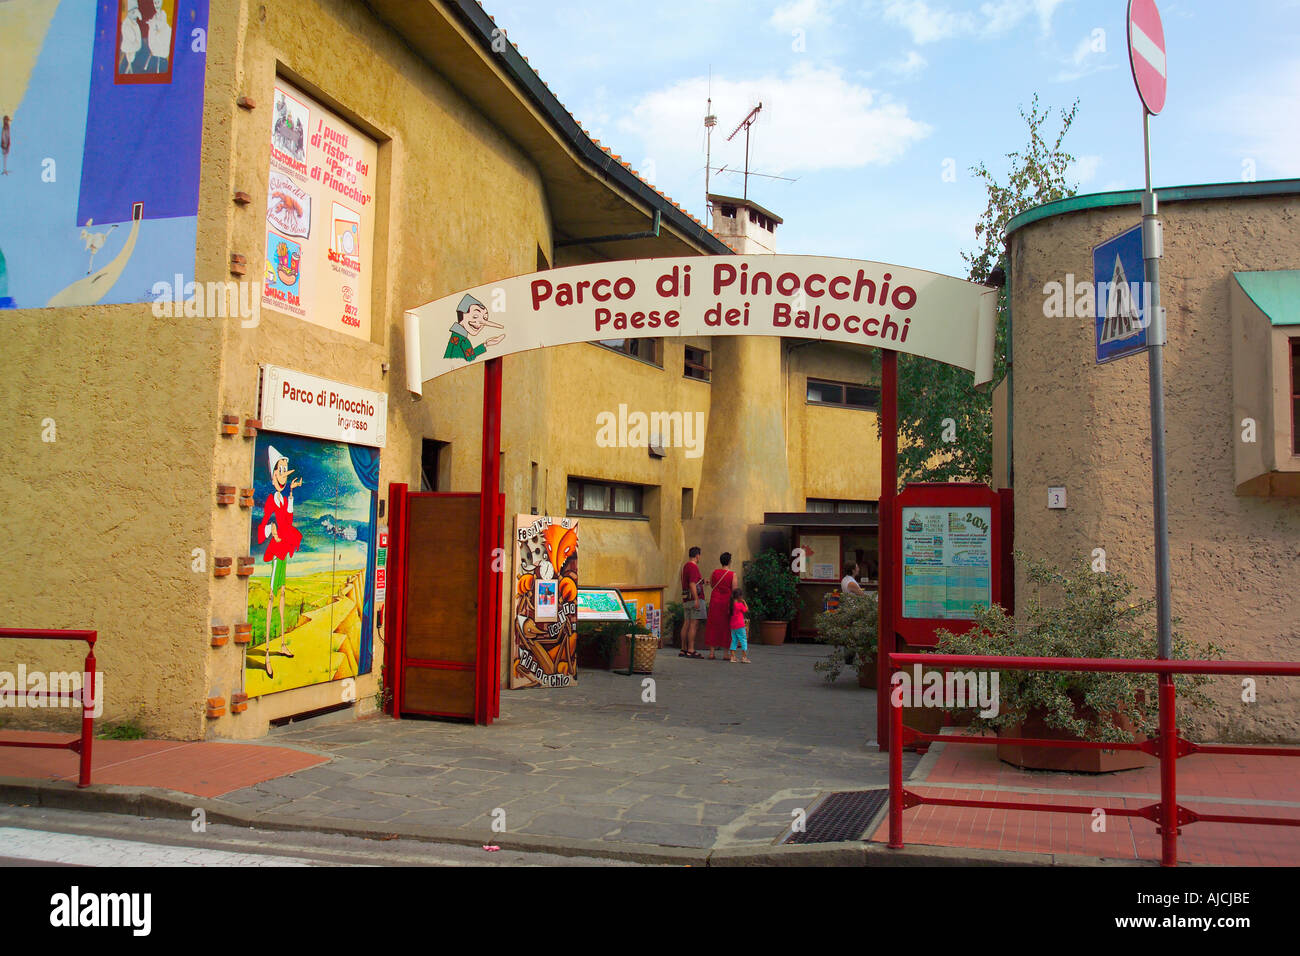 Entrée au parc de Pinocchio à Collodi Parco Toscane Italie Italie Banque D'Images